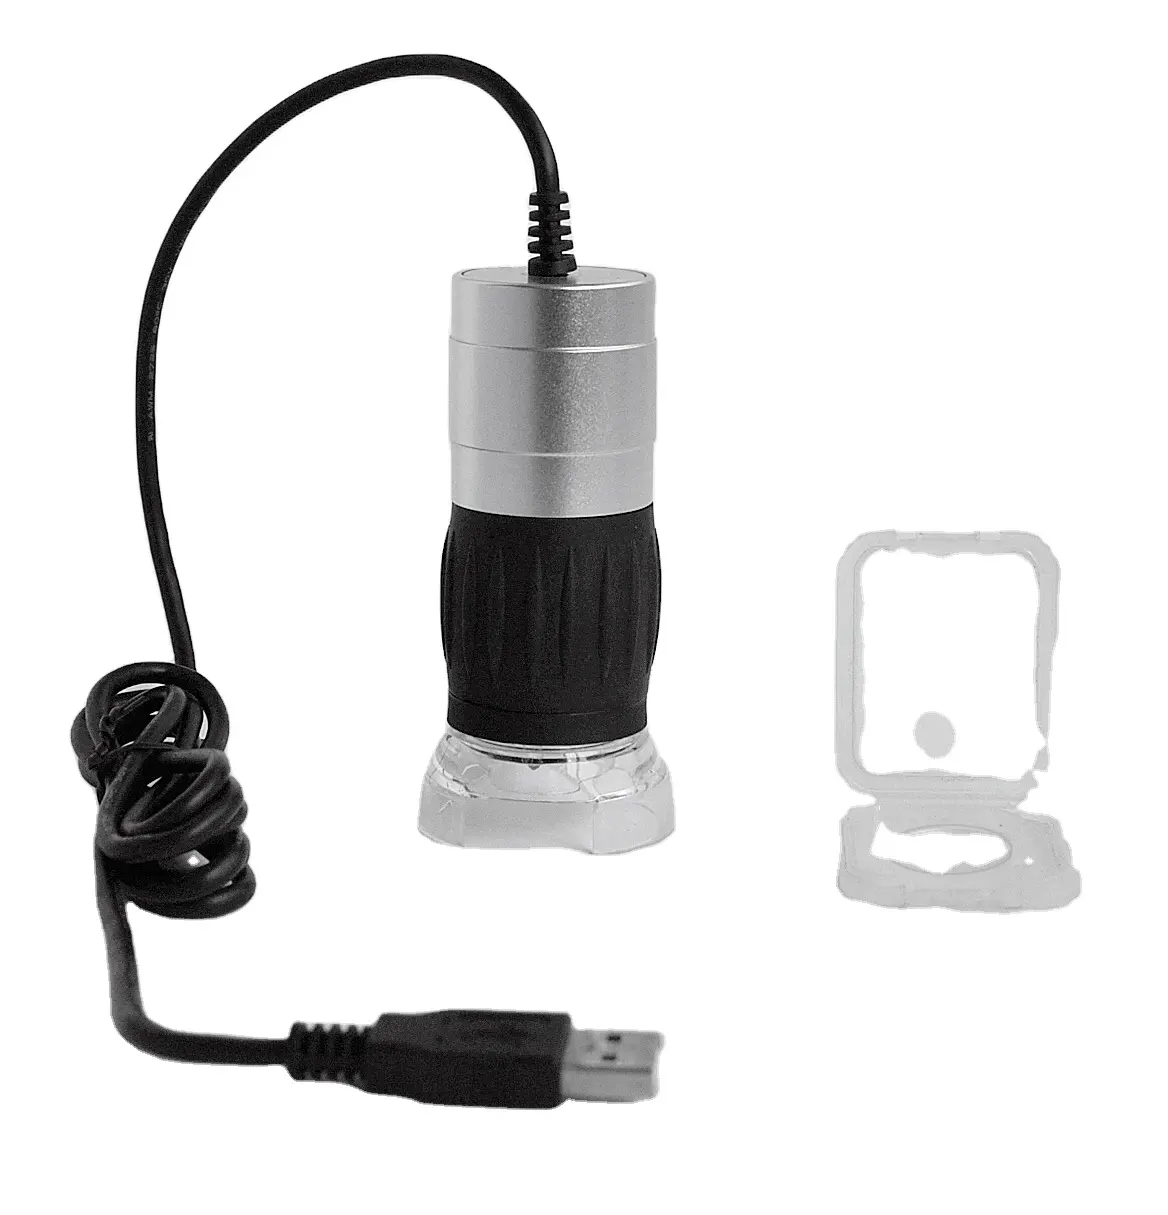 Microscope de mesure numérique USB portable 1.3mp 8LED 40X 240X zoom boîtier métallique